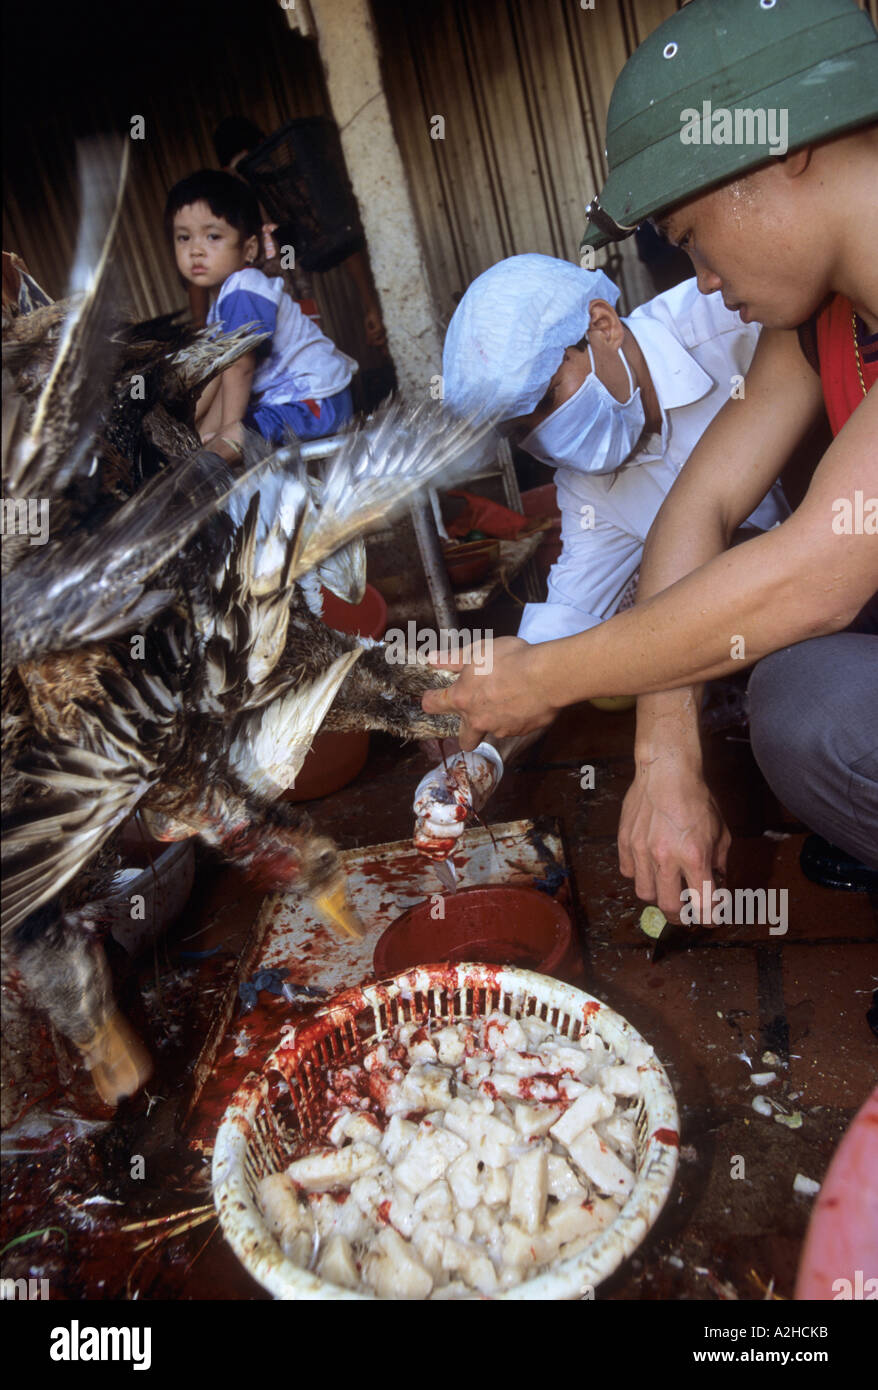 Volaille à vendre, marché de long Bien, Hanoï, Vietnam. Le personnel du ministère de la santé teste les oiseaux et les produits pour détecter la grippe aviaire. Banque D'Images